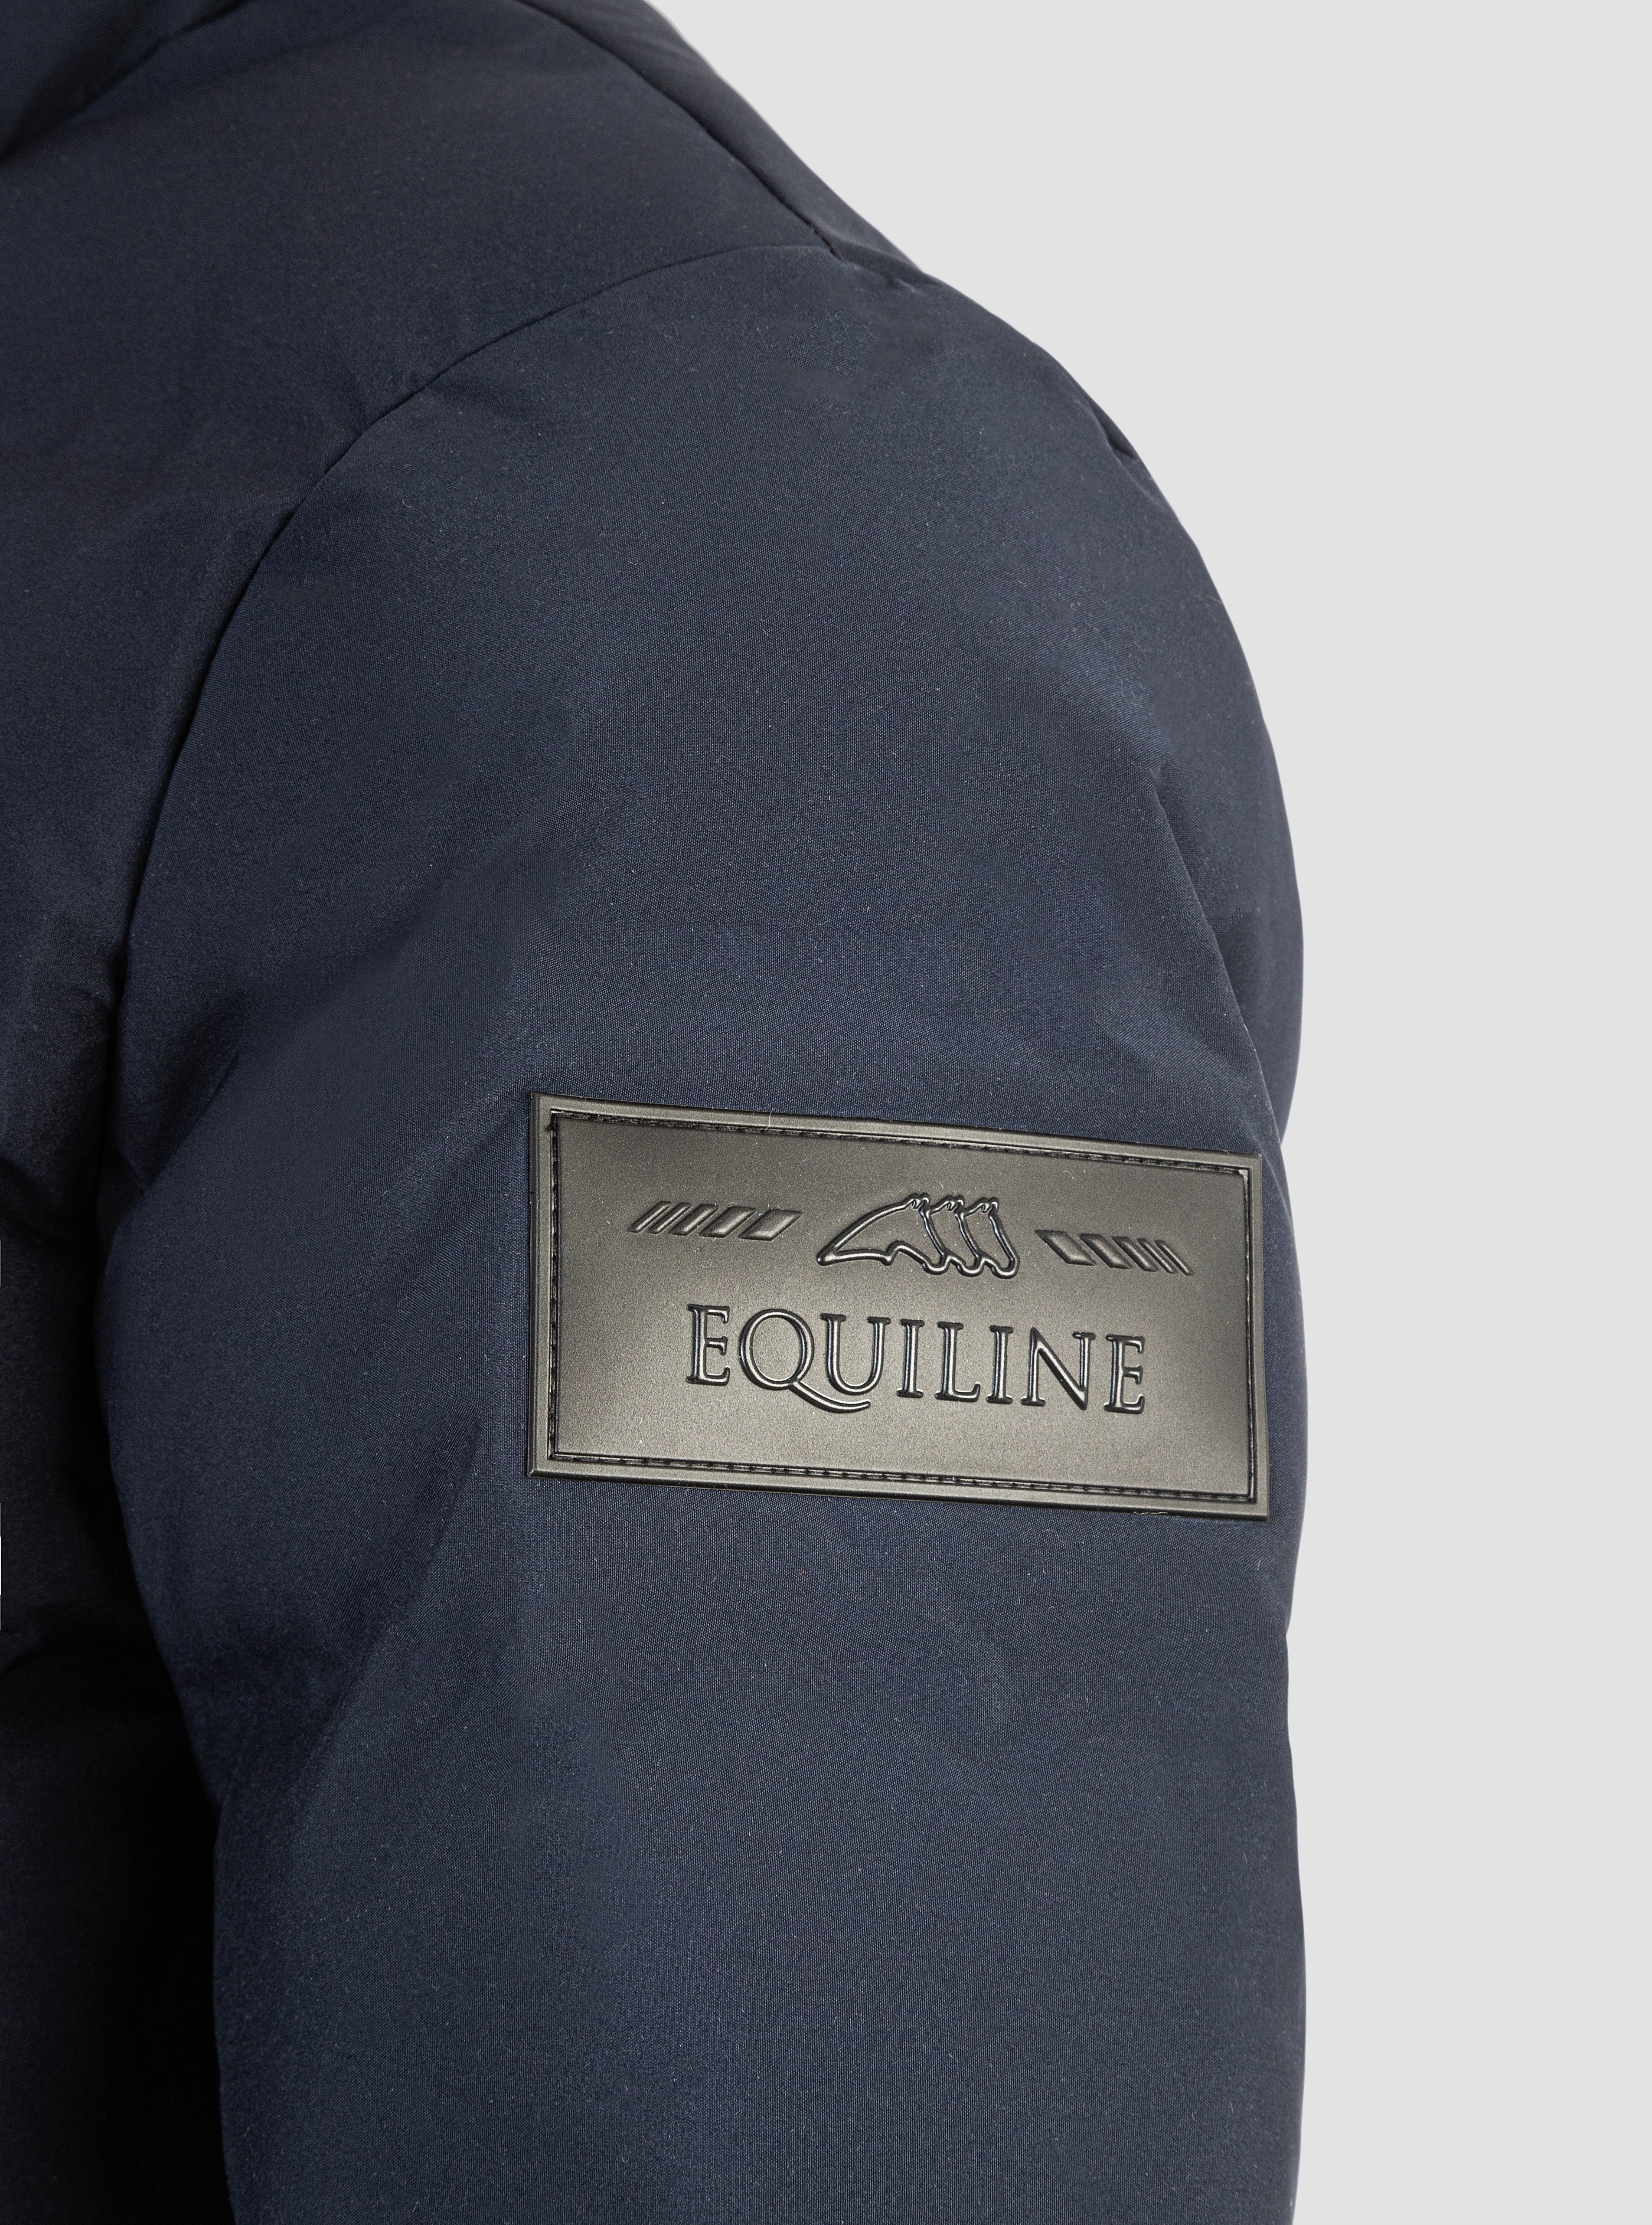 Reduced! Equiline Men’s Winter Coat